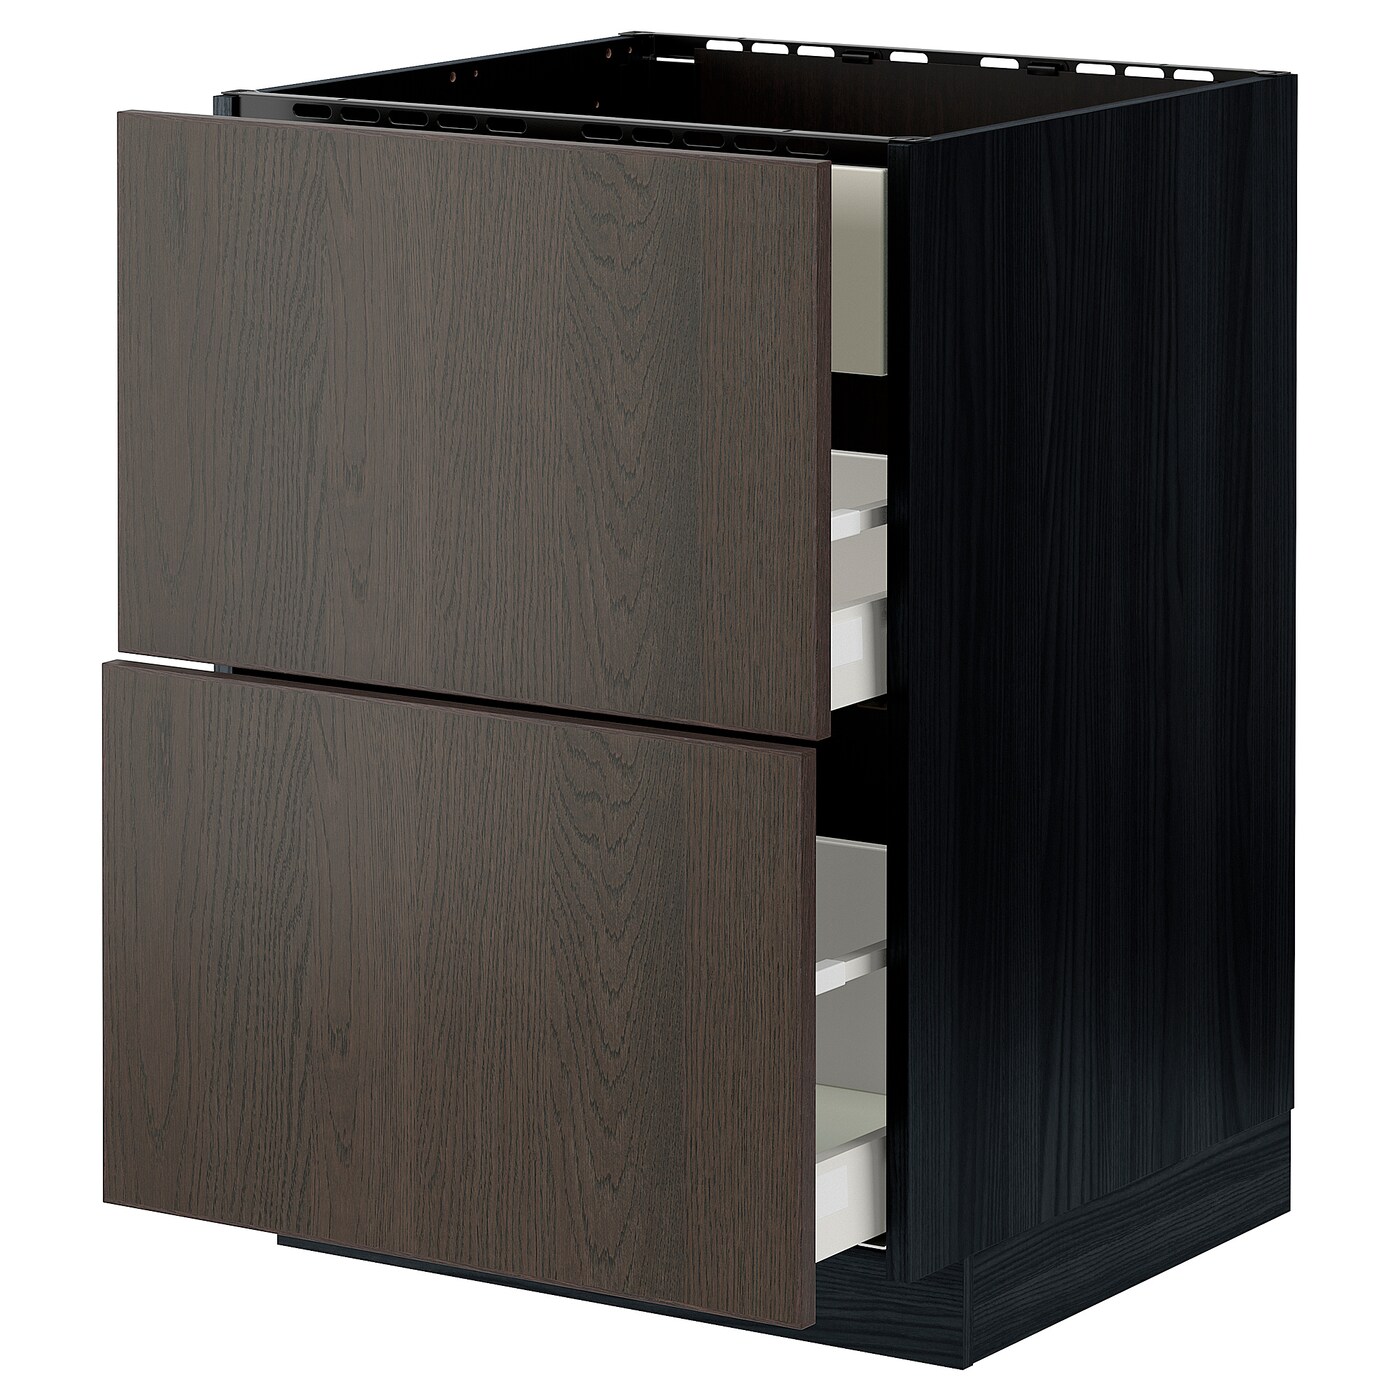 Напольный шкаф - METOD / MAXIMERA IKEA/ МЕТОД/ МАКСИМЕРА ИКЕА,  88х60 см, черный /коричневый